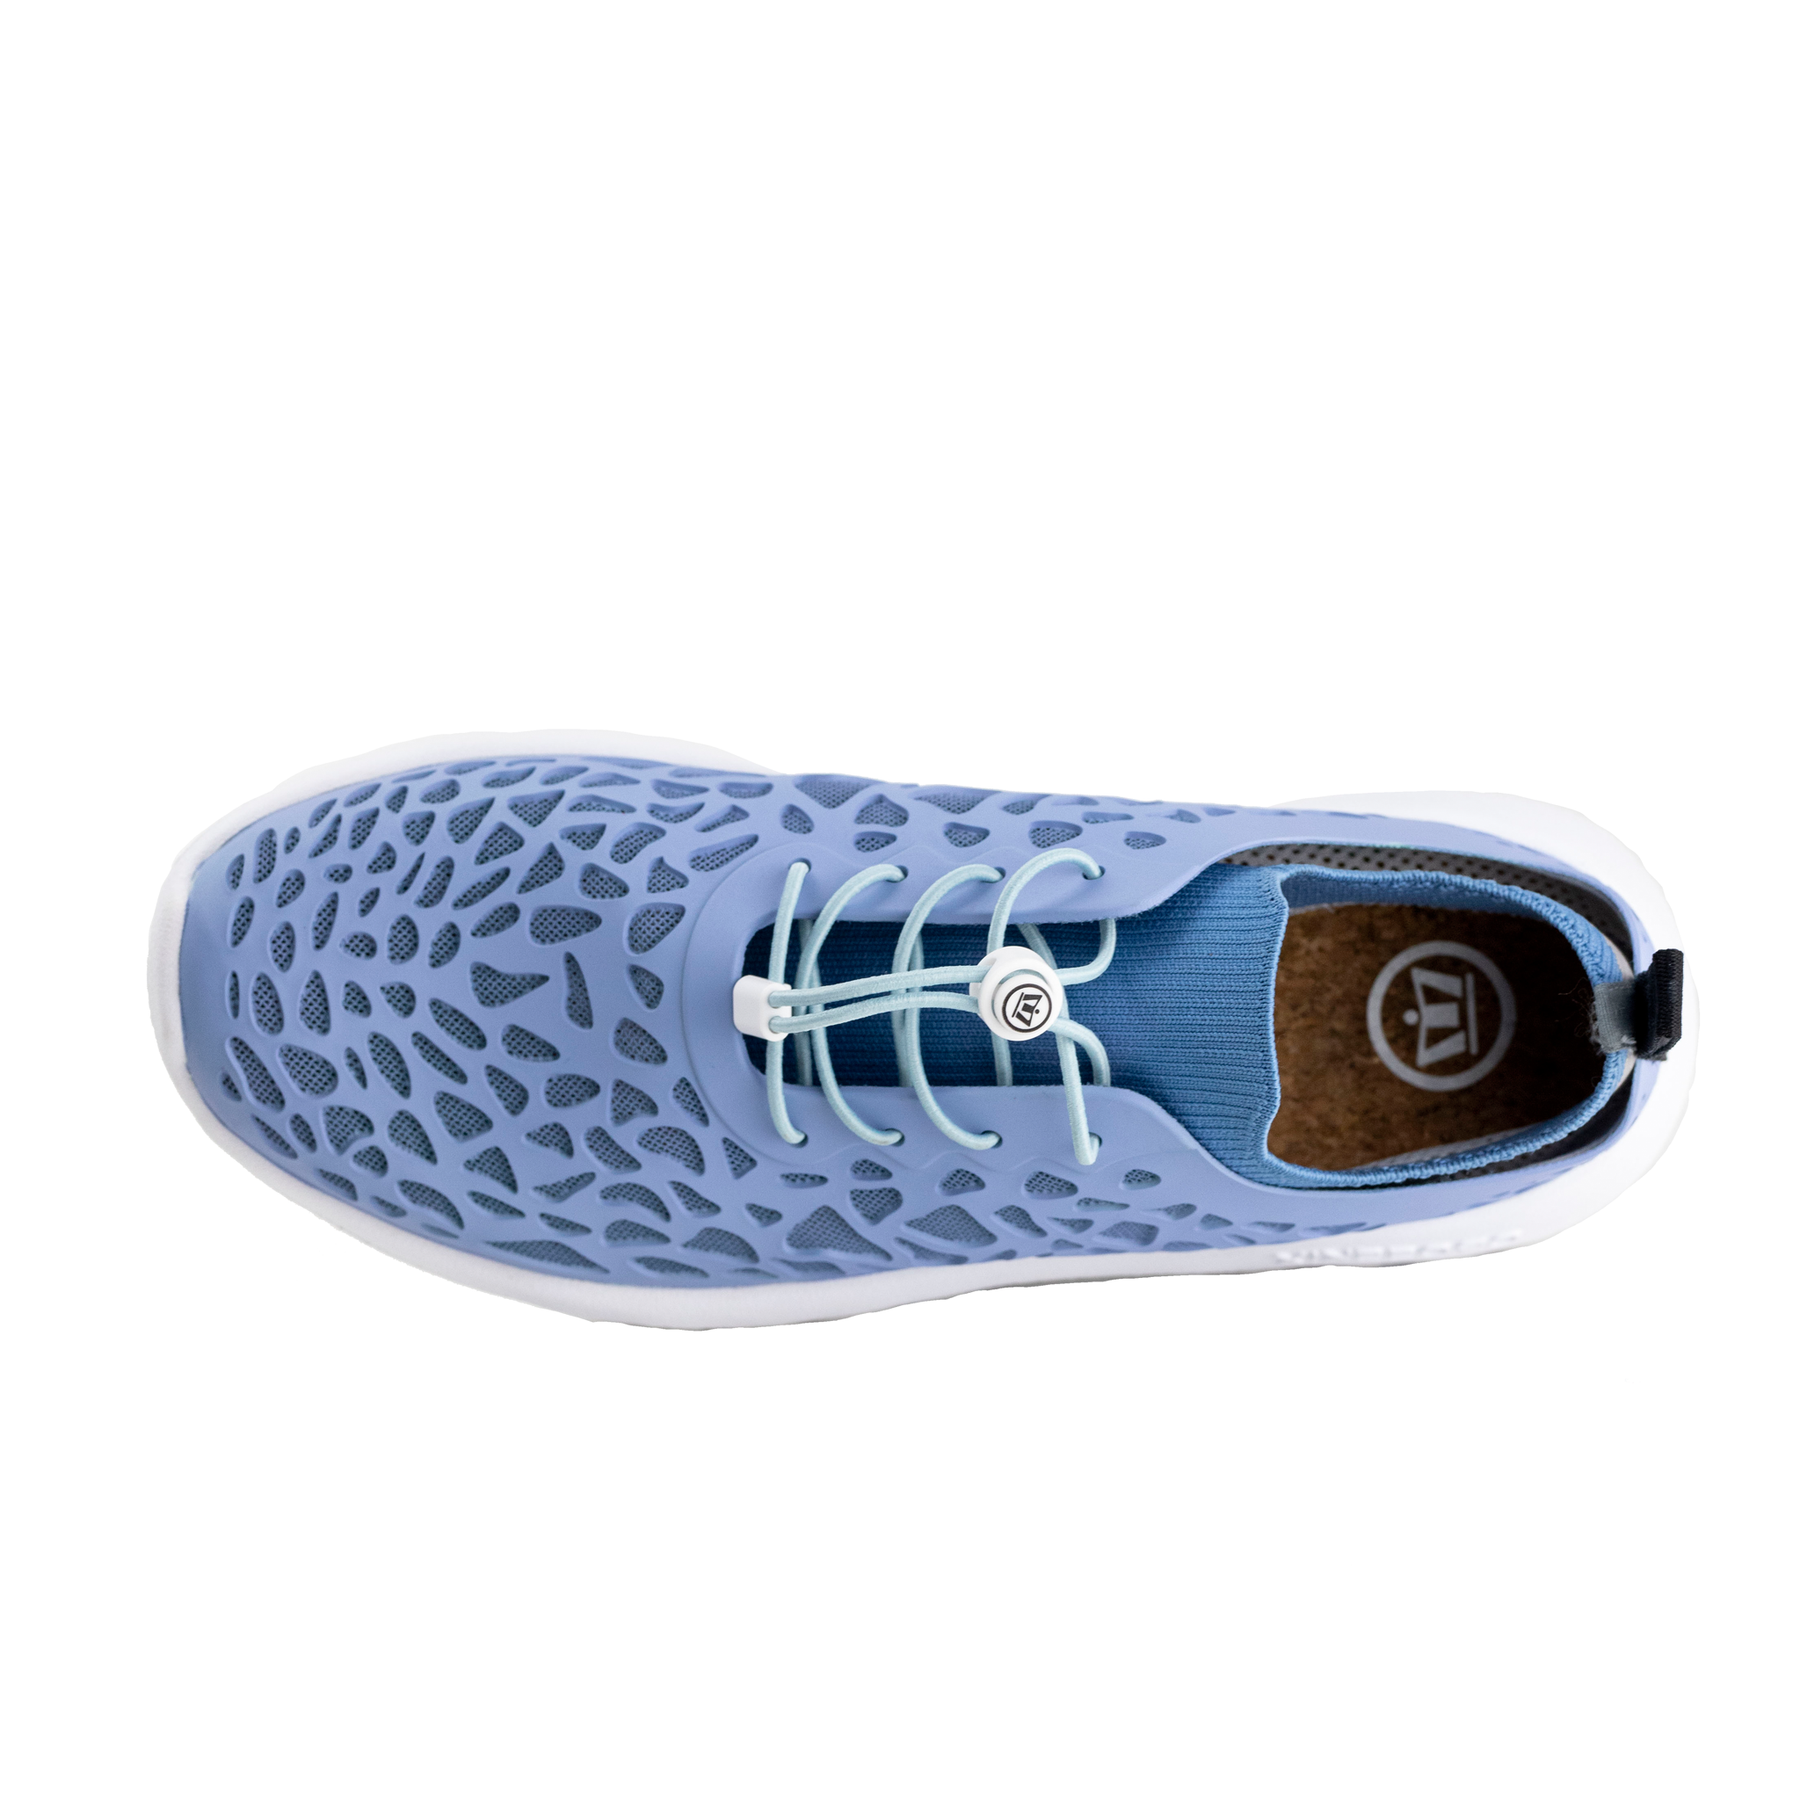 Tetra Closed Toe Dri-Fit Women’s Water Shoes by CROSSKIX - Sportsman Gear